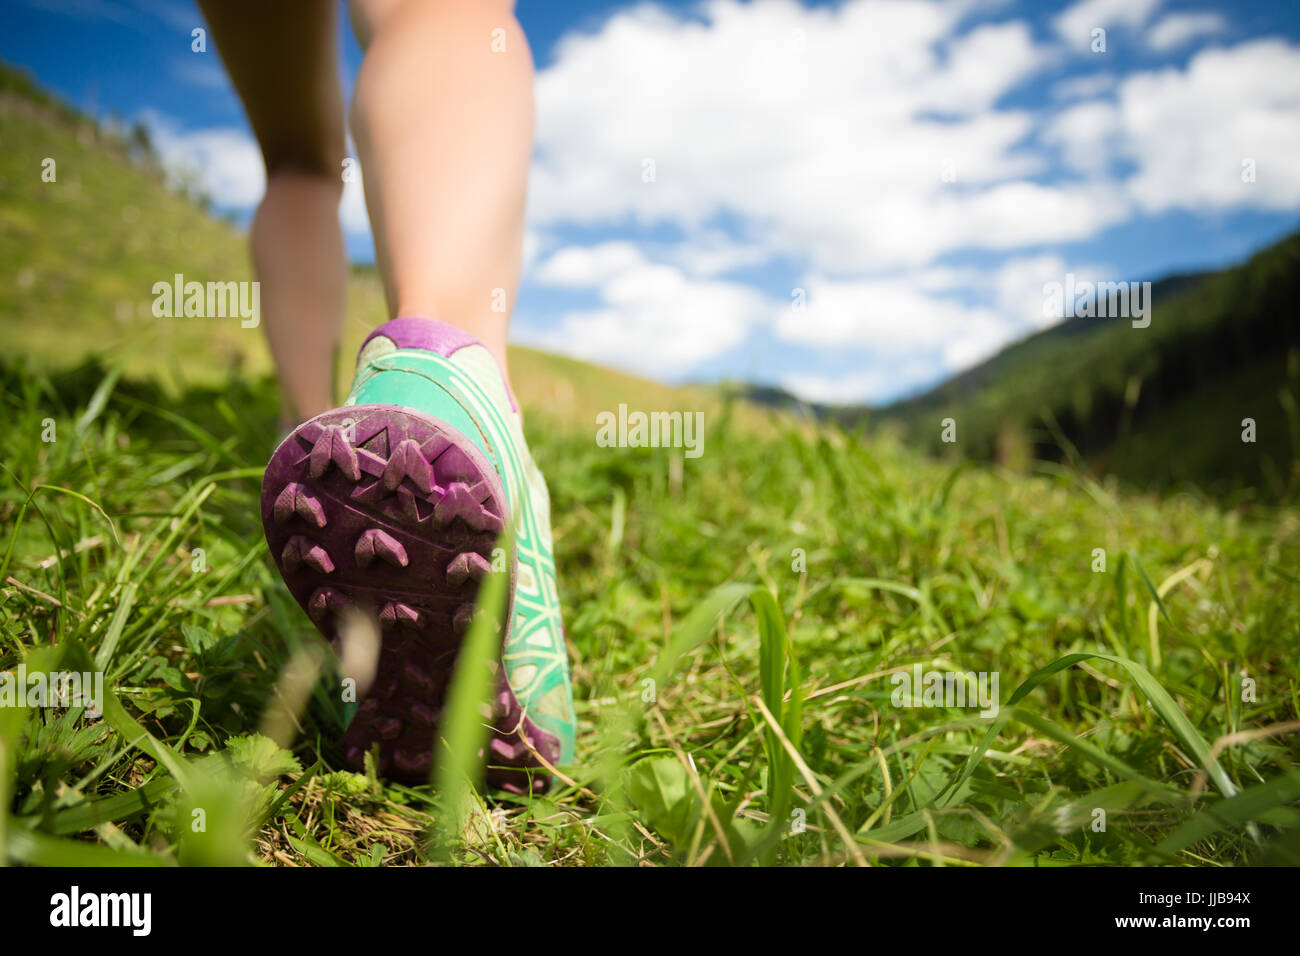 Frau in Bergen im Sport Wanderschuhe wandern. Joggen, trekking, Wandern oder training draußen im Sommer Natur. Inspirierende und motivierende Gesundheit f Stockfoto